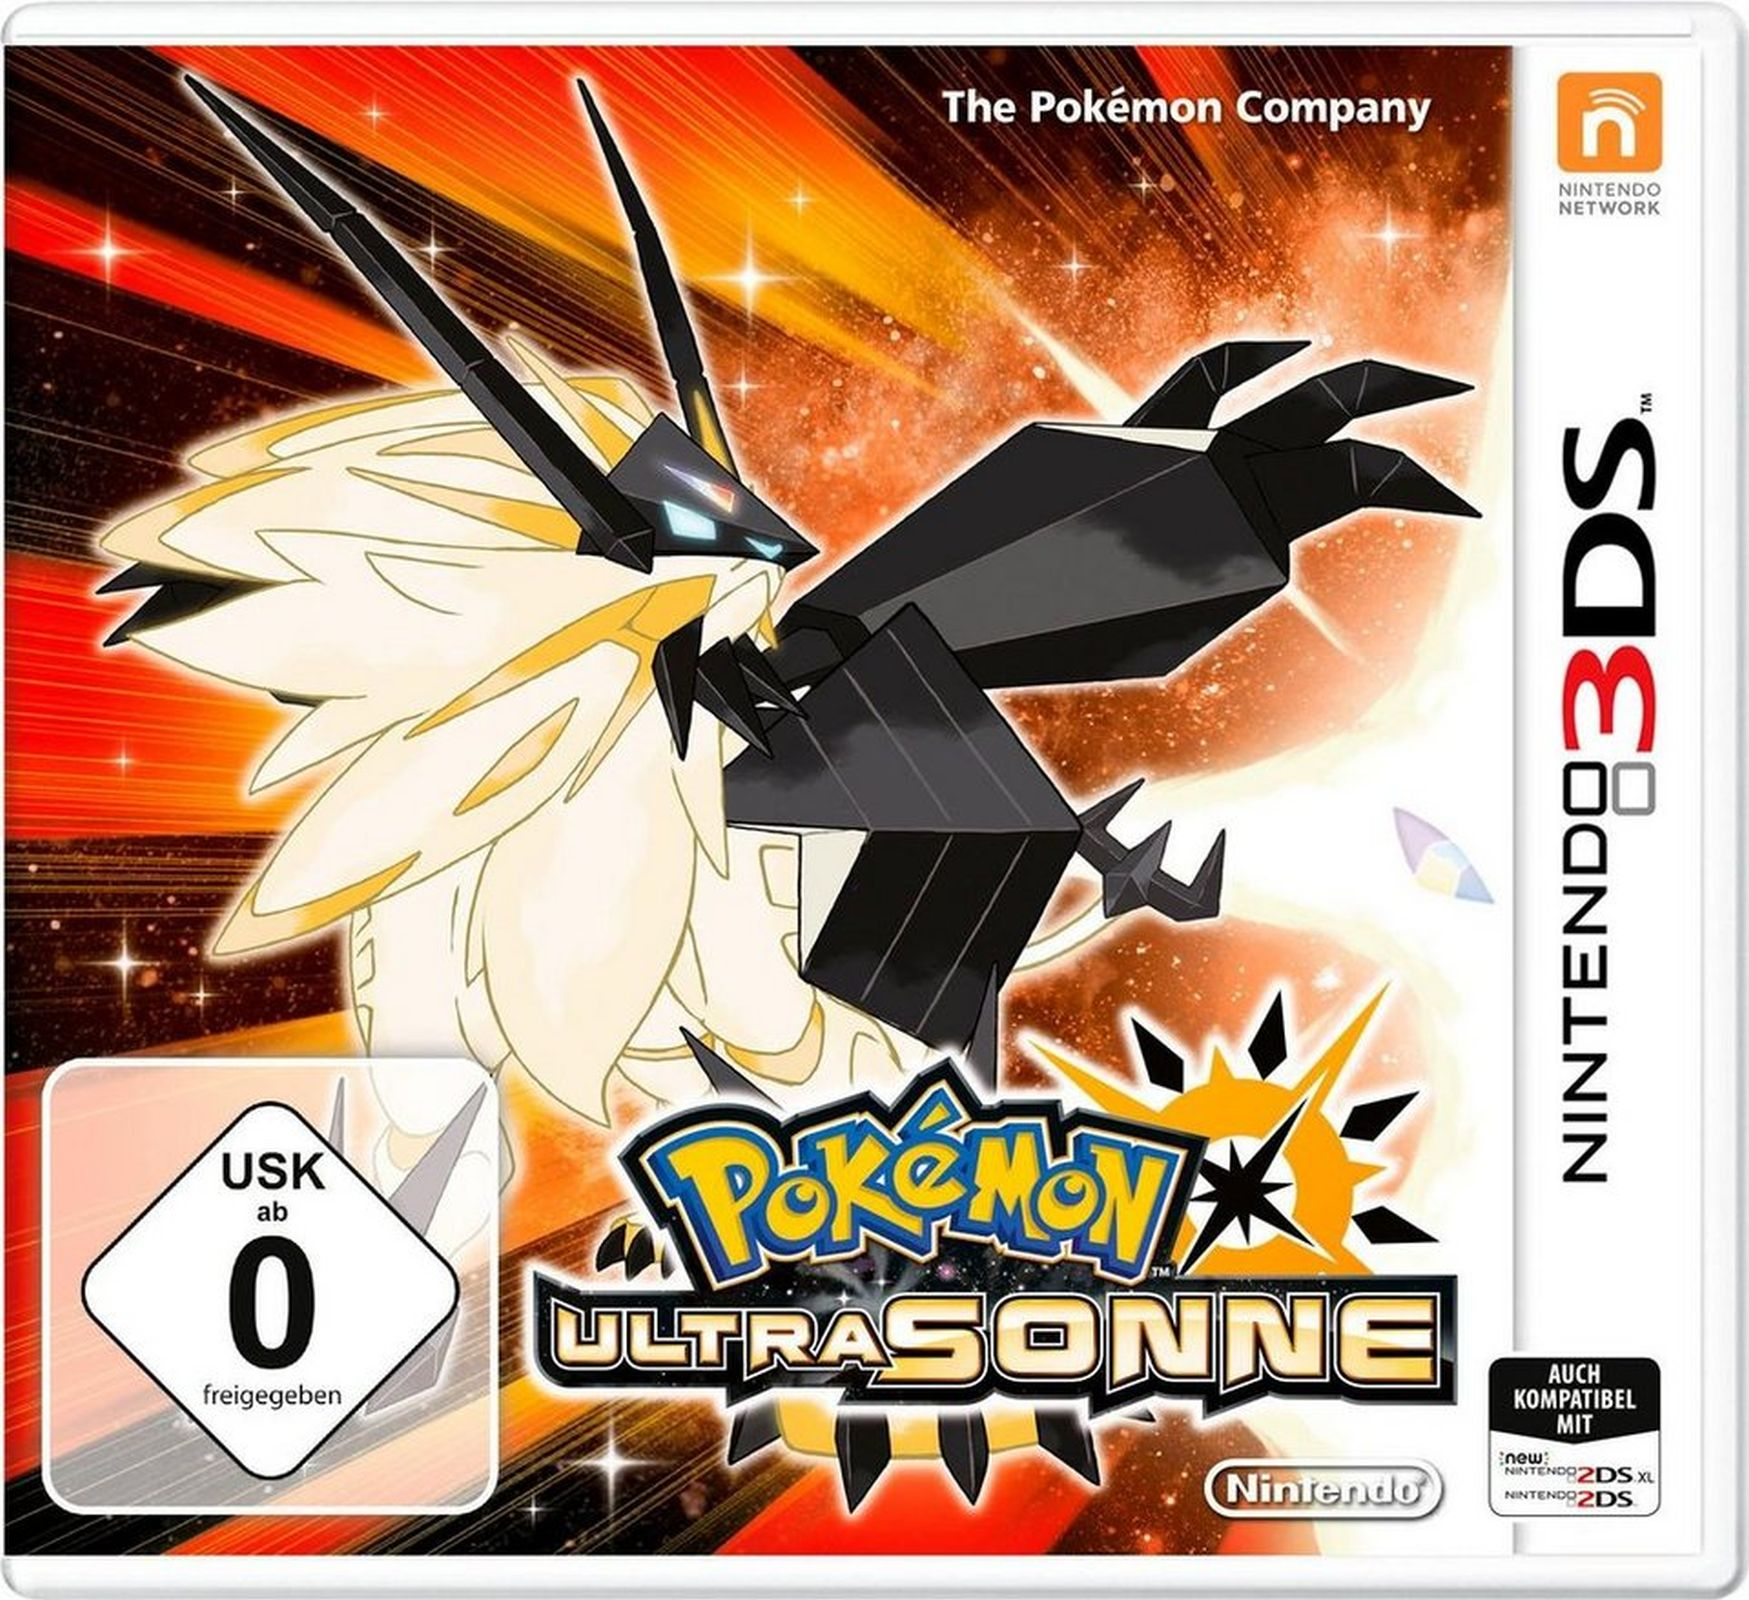 3DS] - Ultrasonne Pokémon [Nintendo